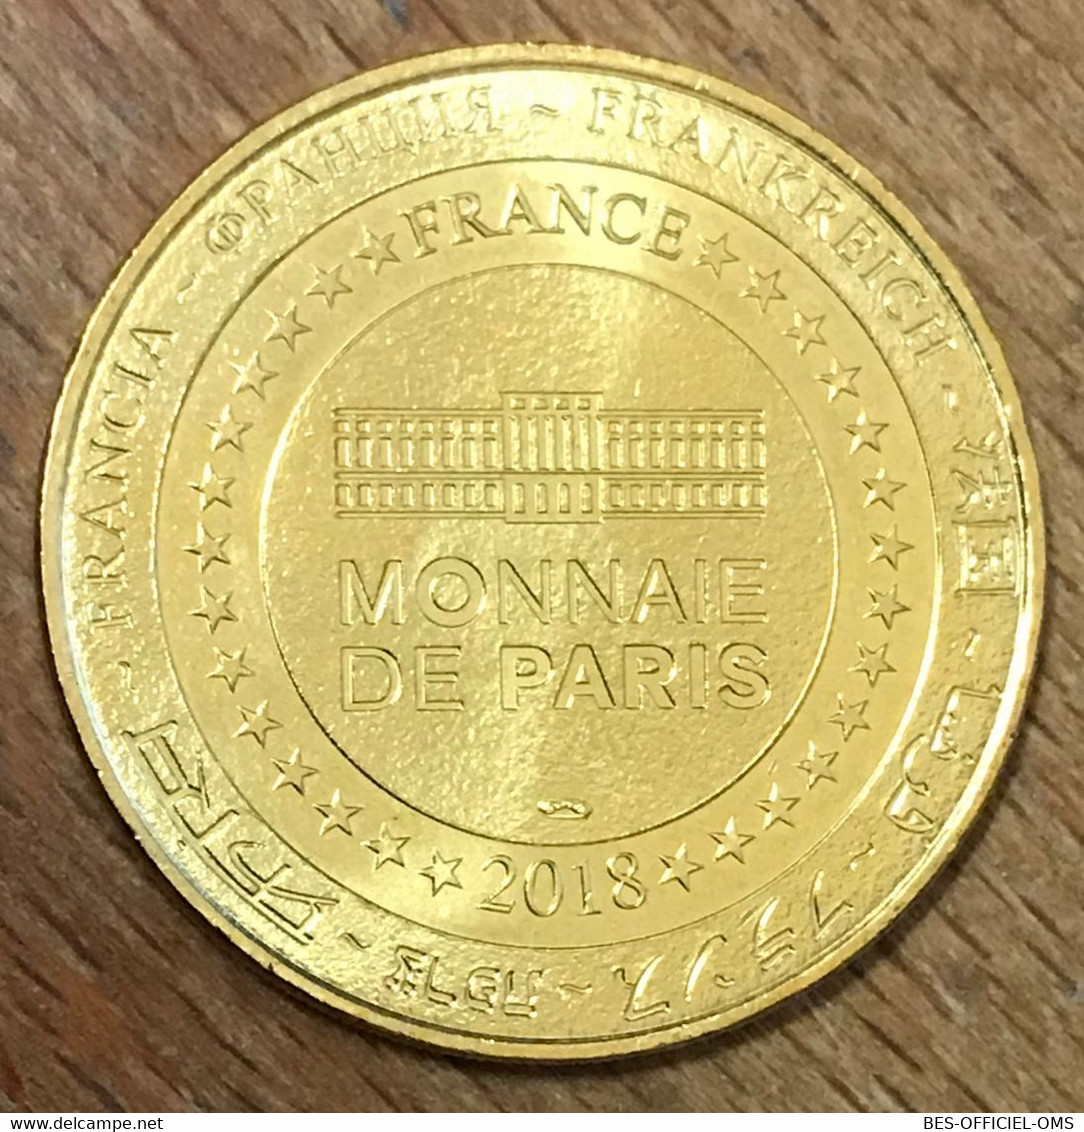 56 MENHIRS DE MONTENEUF MEDAILLE SOUVENIR MONNAIE DE PARIS 2018 JETON TOURISTIQUE MEDALS COINS TOKENS - 2018